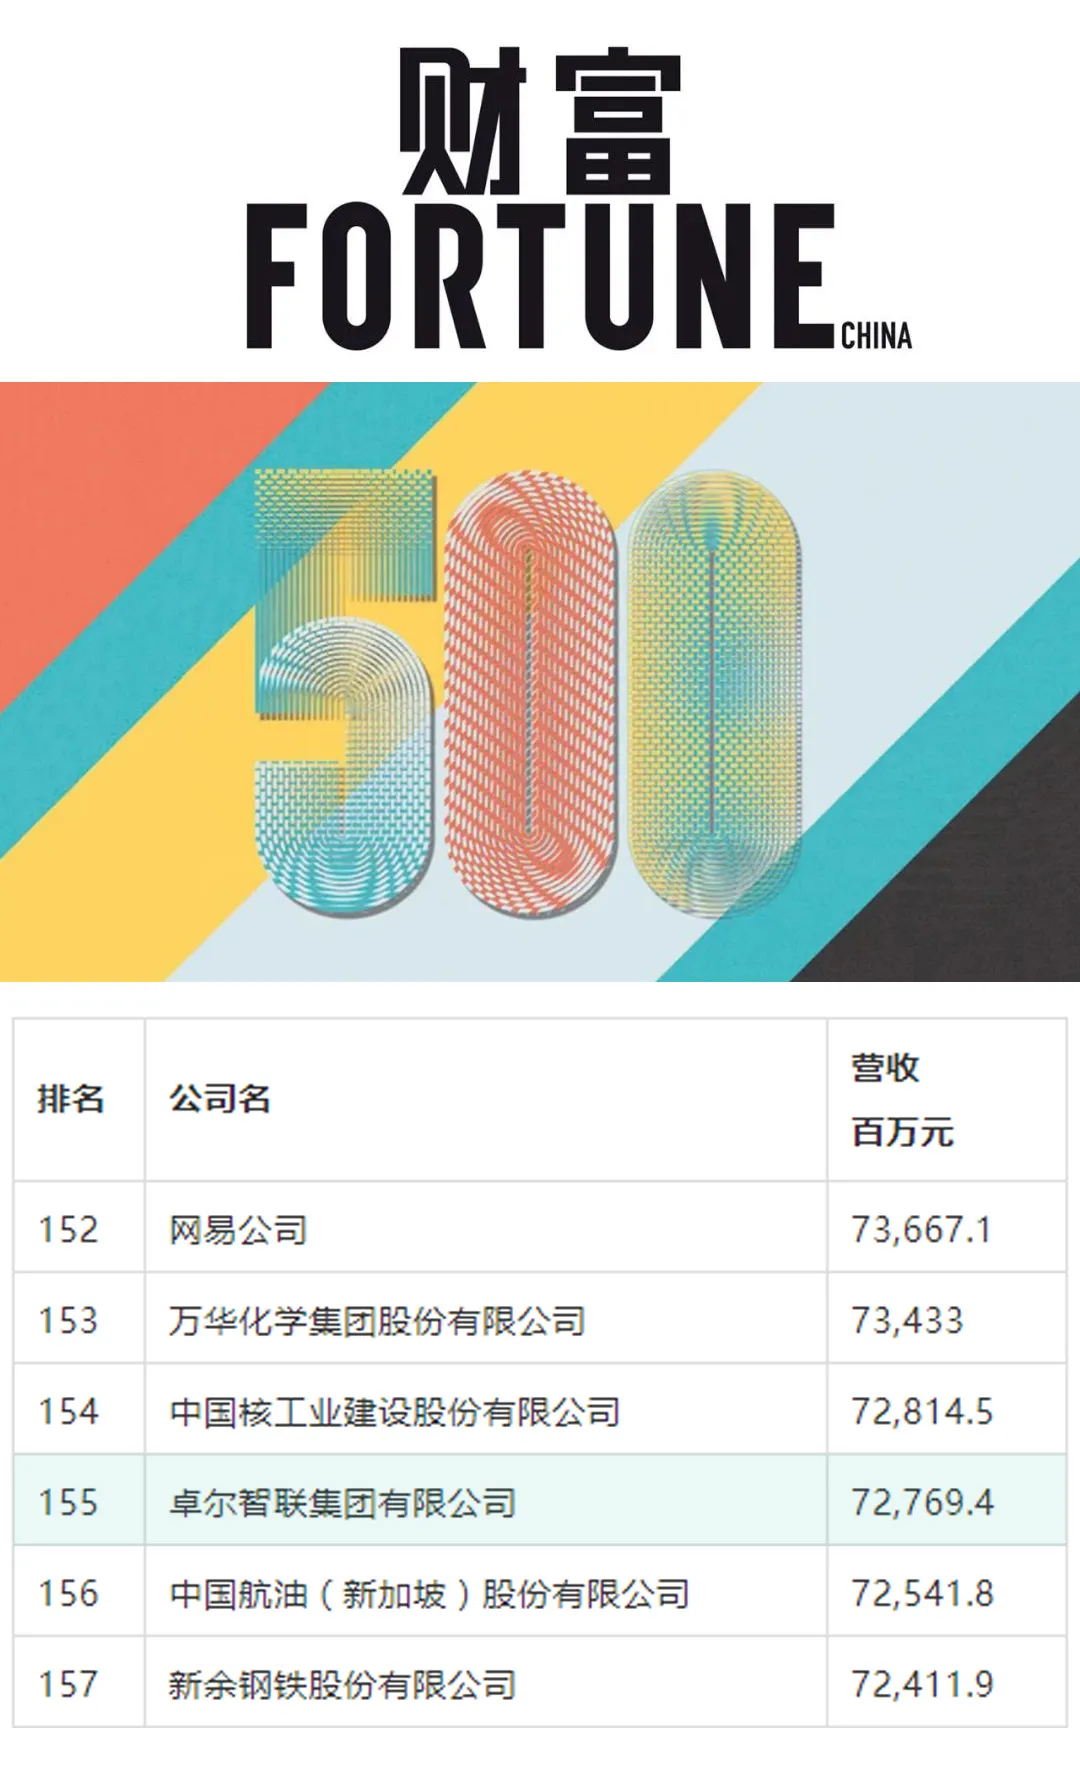 卓尔智联四度蝉联《财富》中国500强